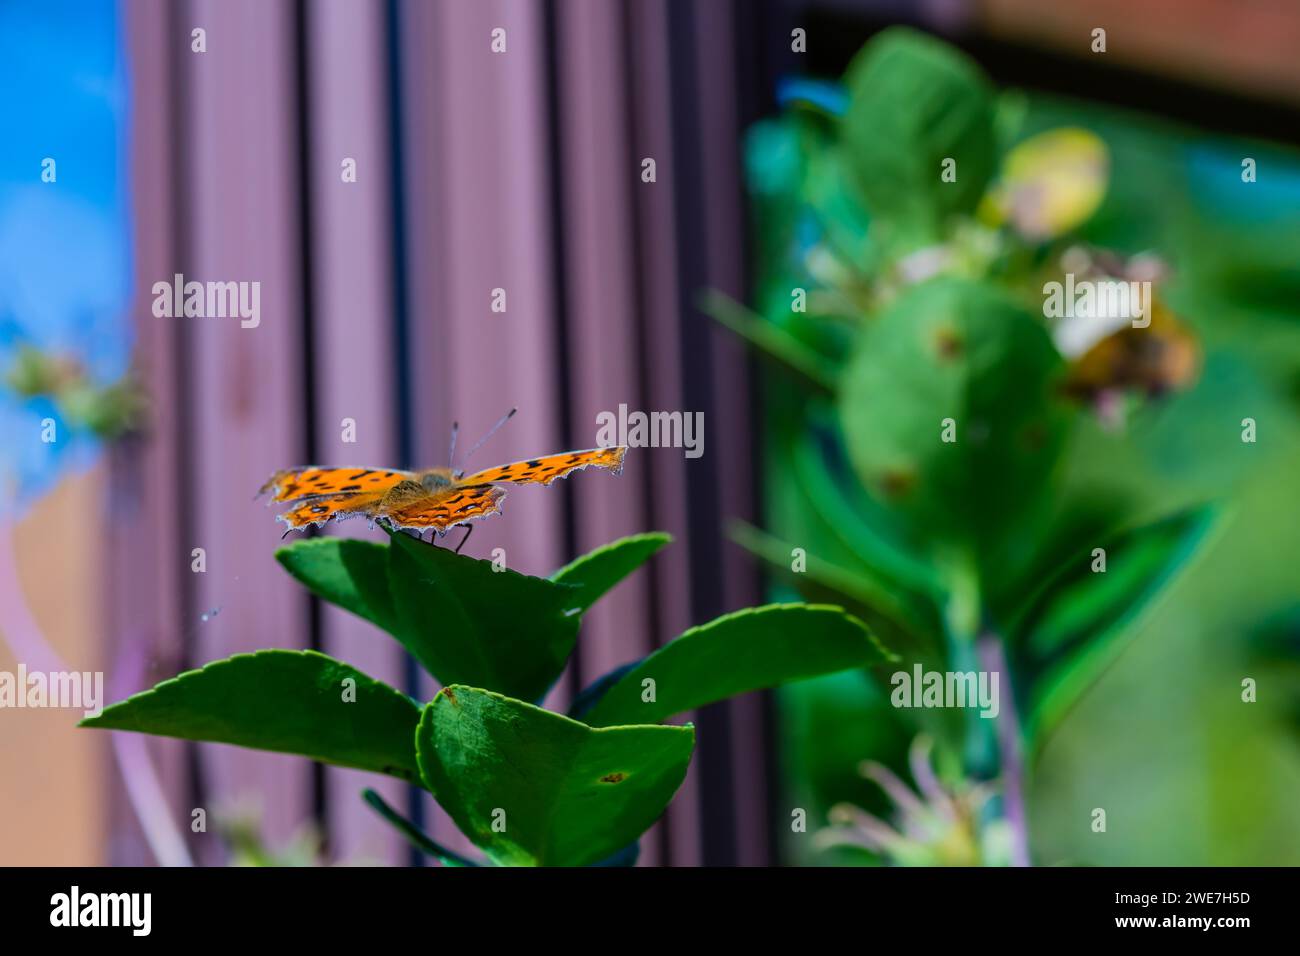 La farfalla a virgola con ali a macchie nere che poggiano su foglie di piante verdi Foto Stock